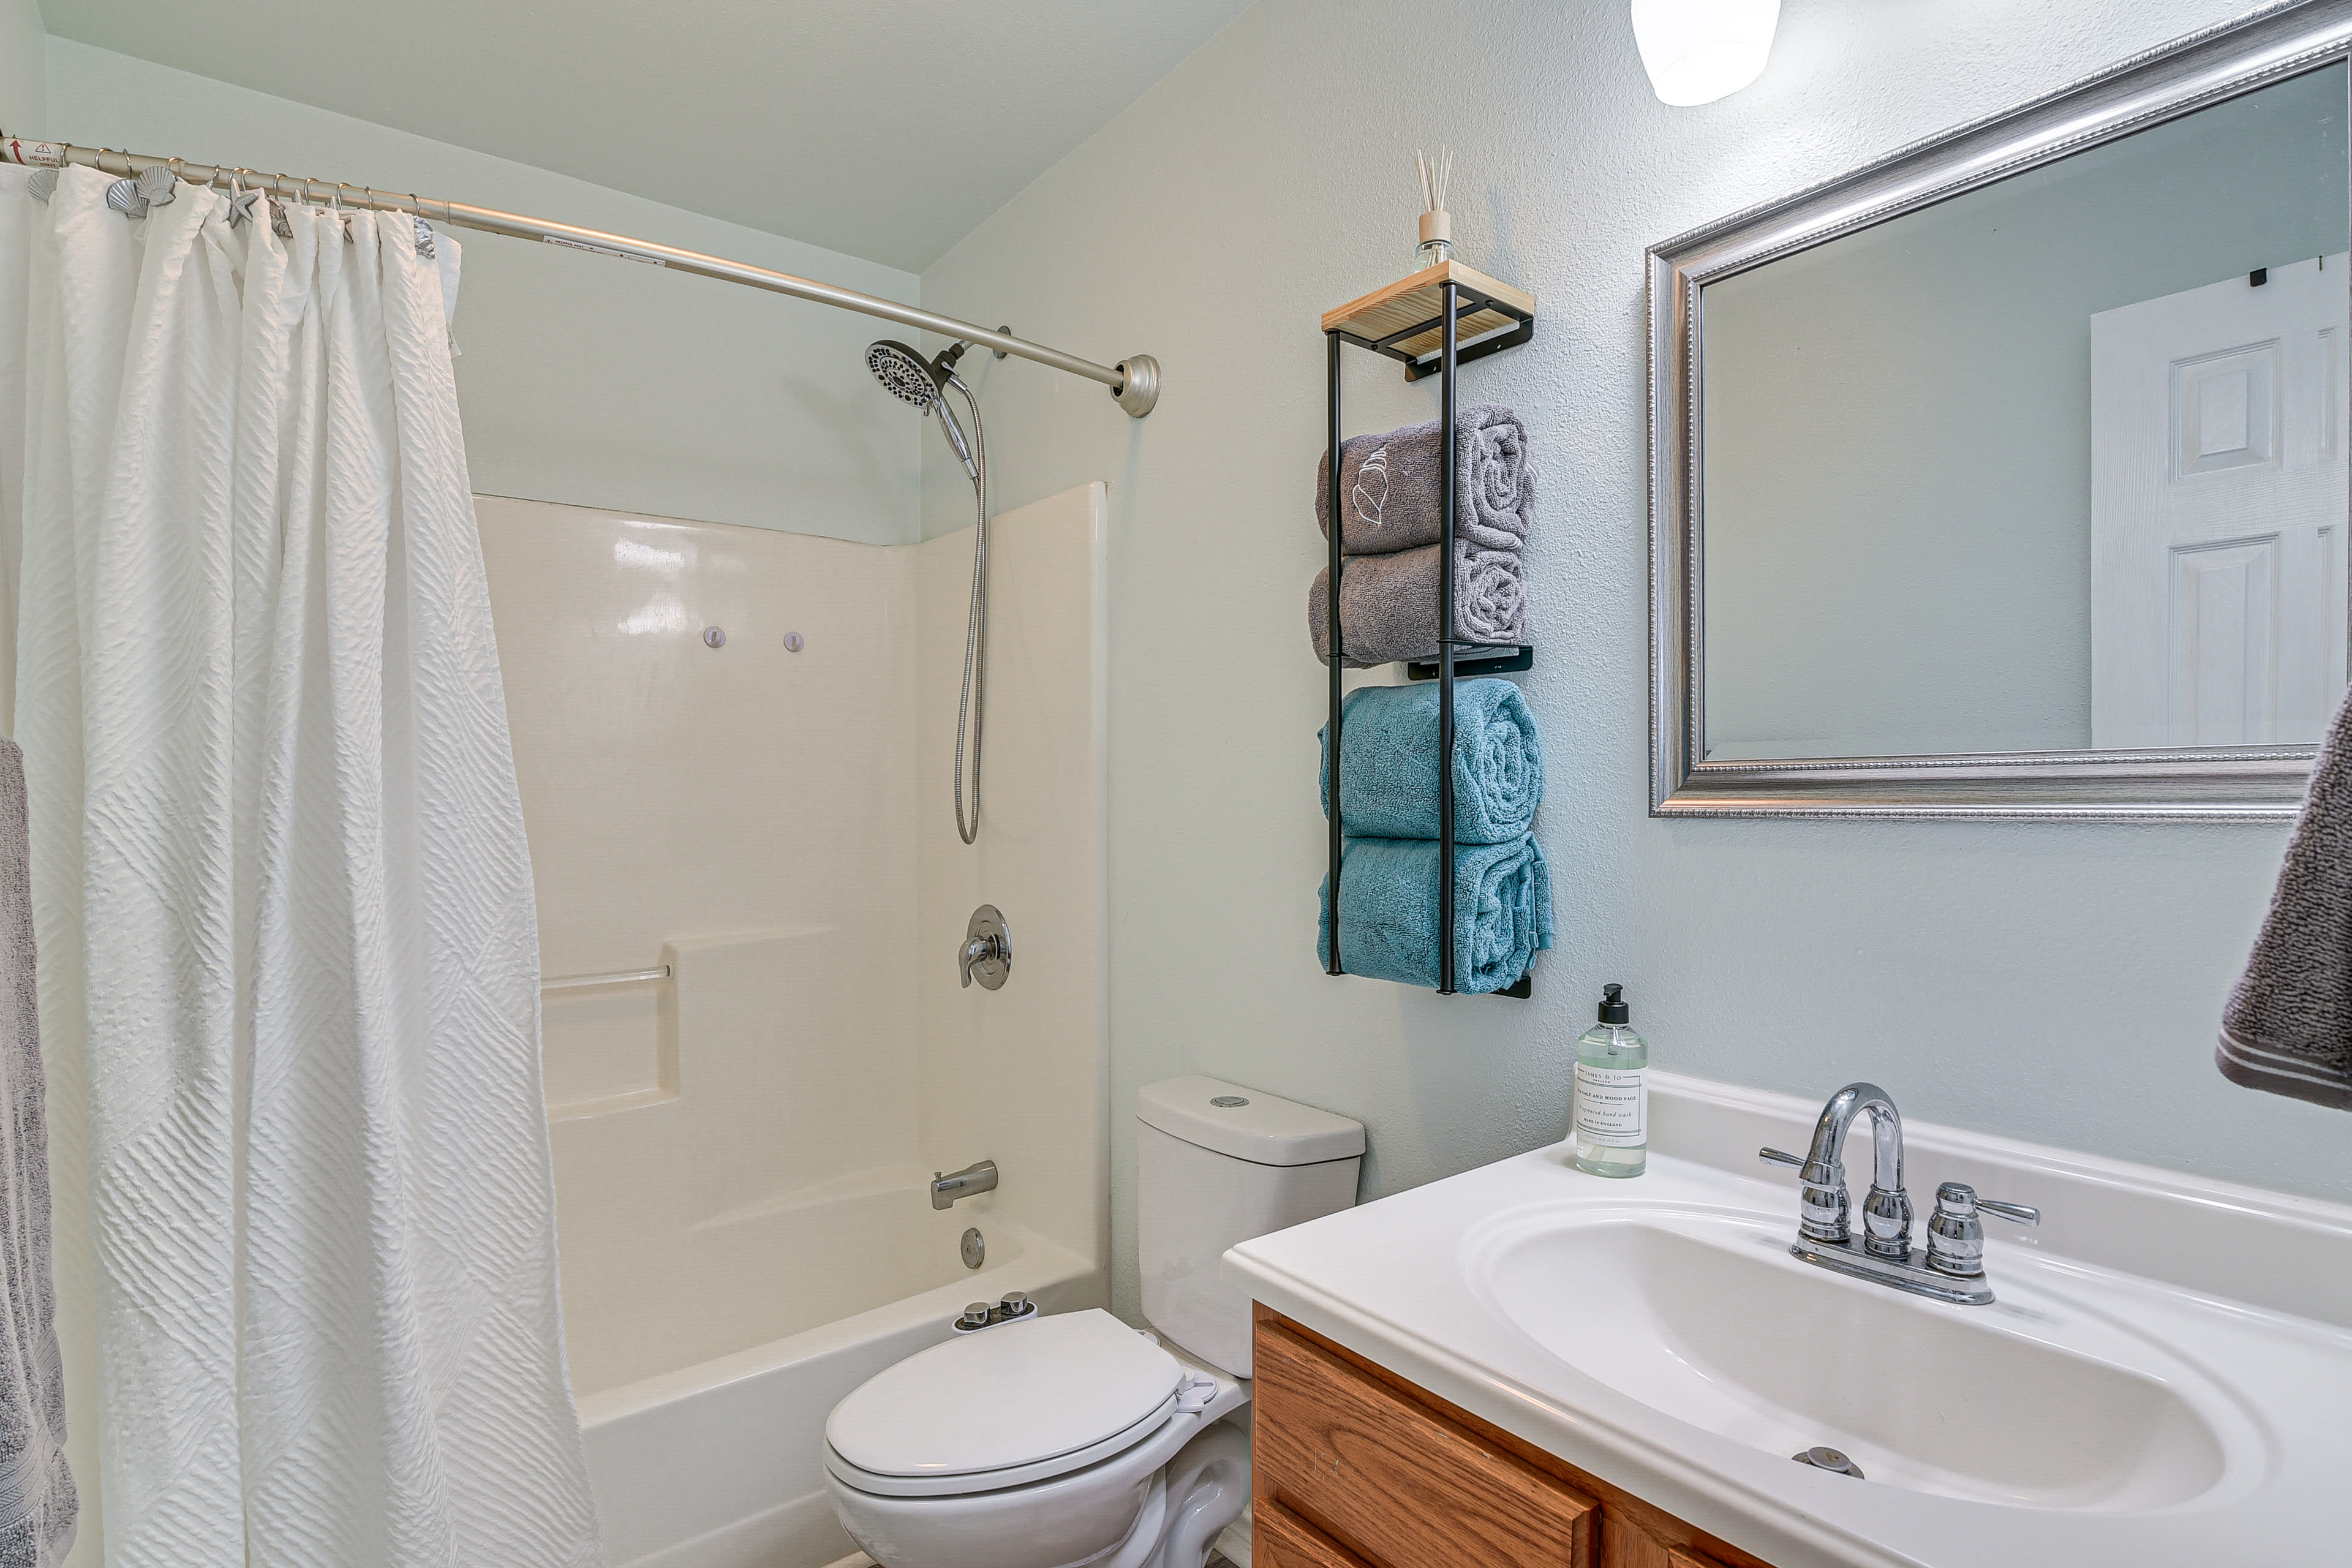 Full Bathroom | Shower/Tub Combo | Hair Dryer